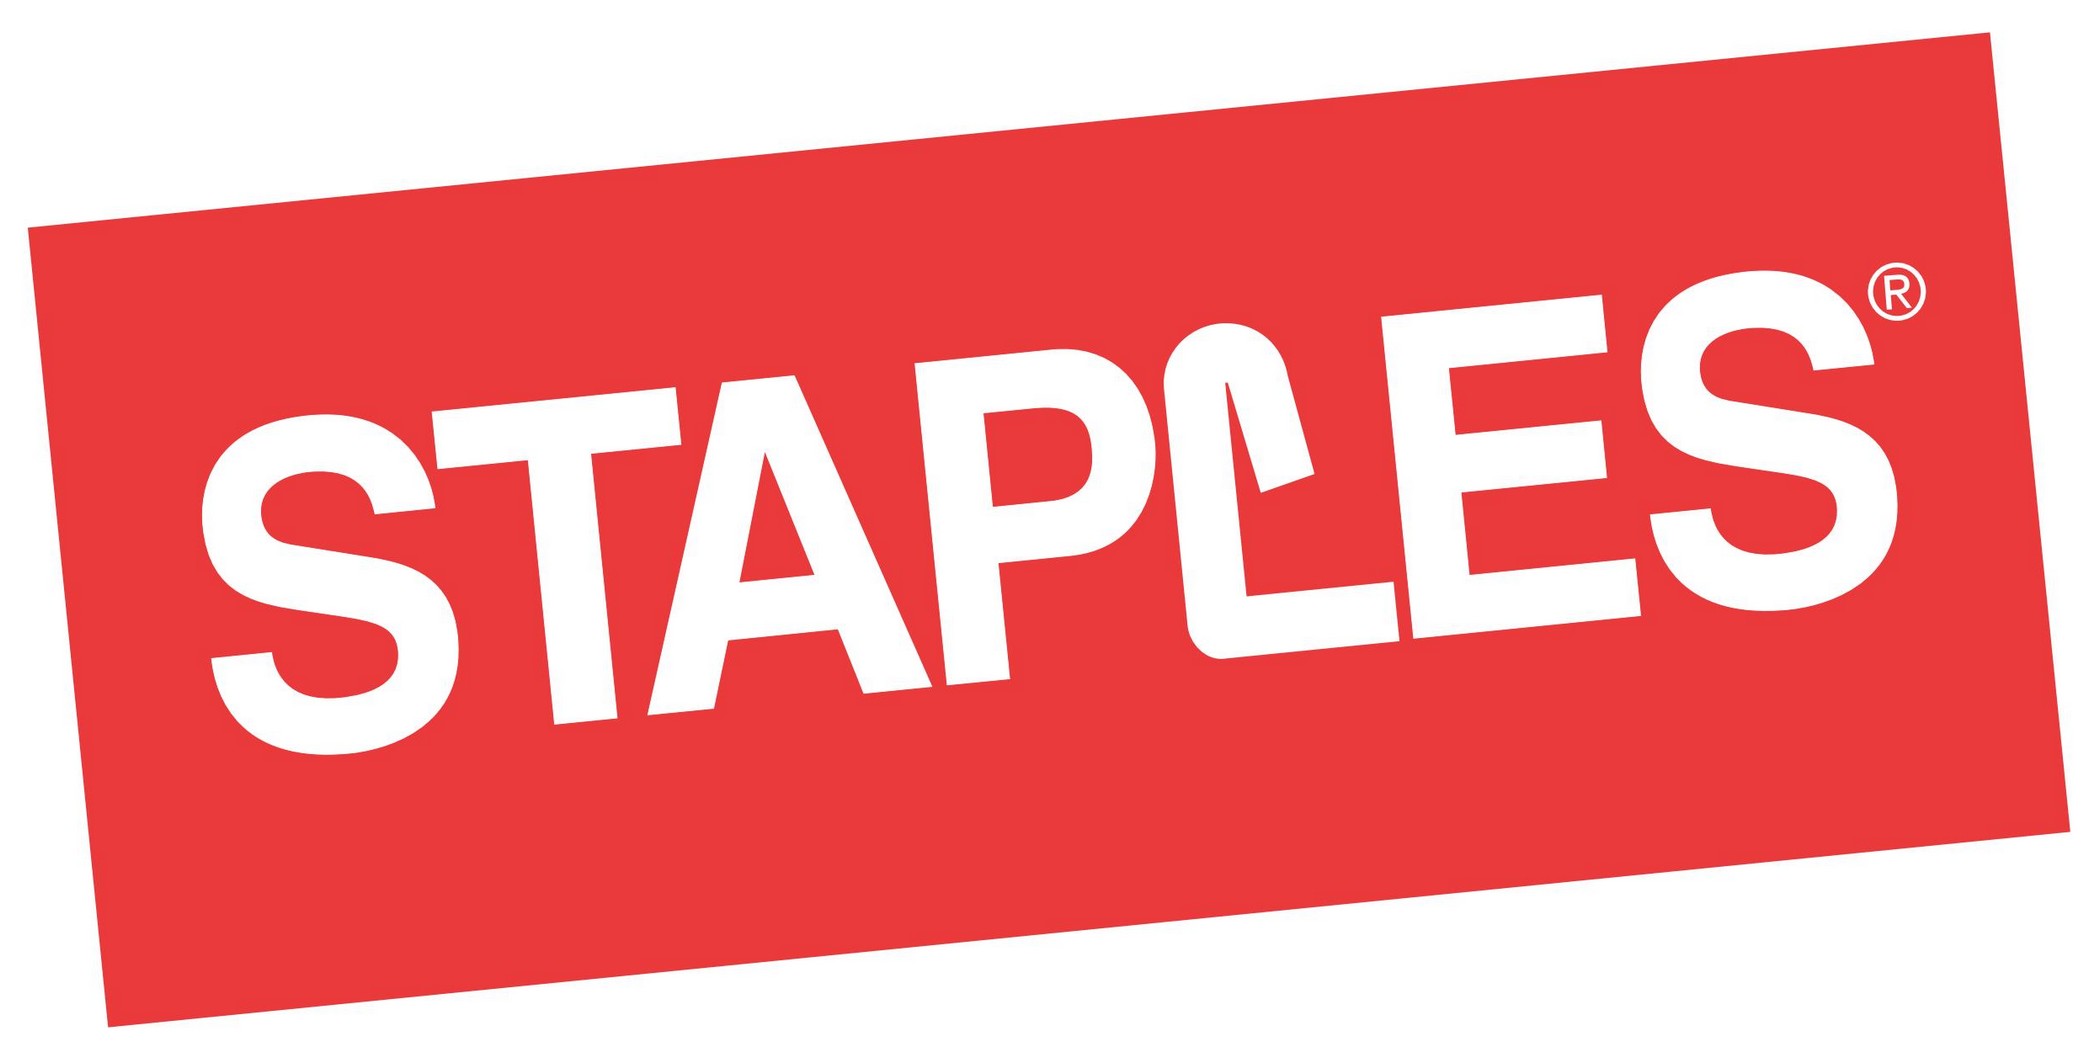 staples-logo.jpg